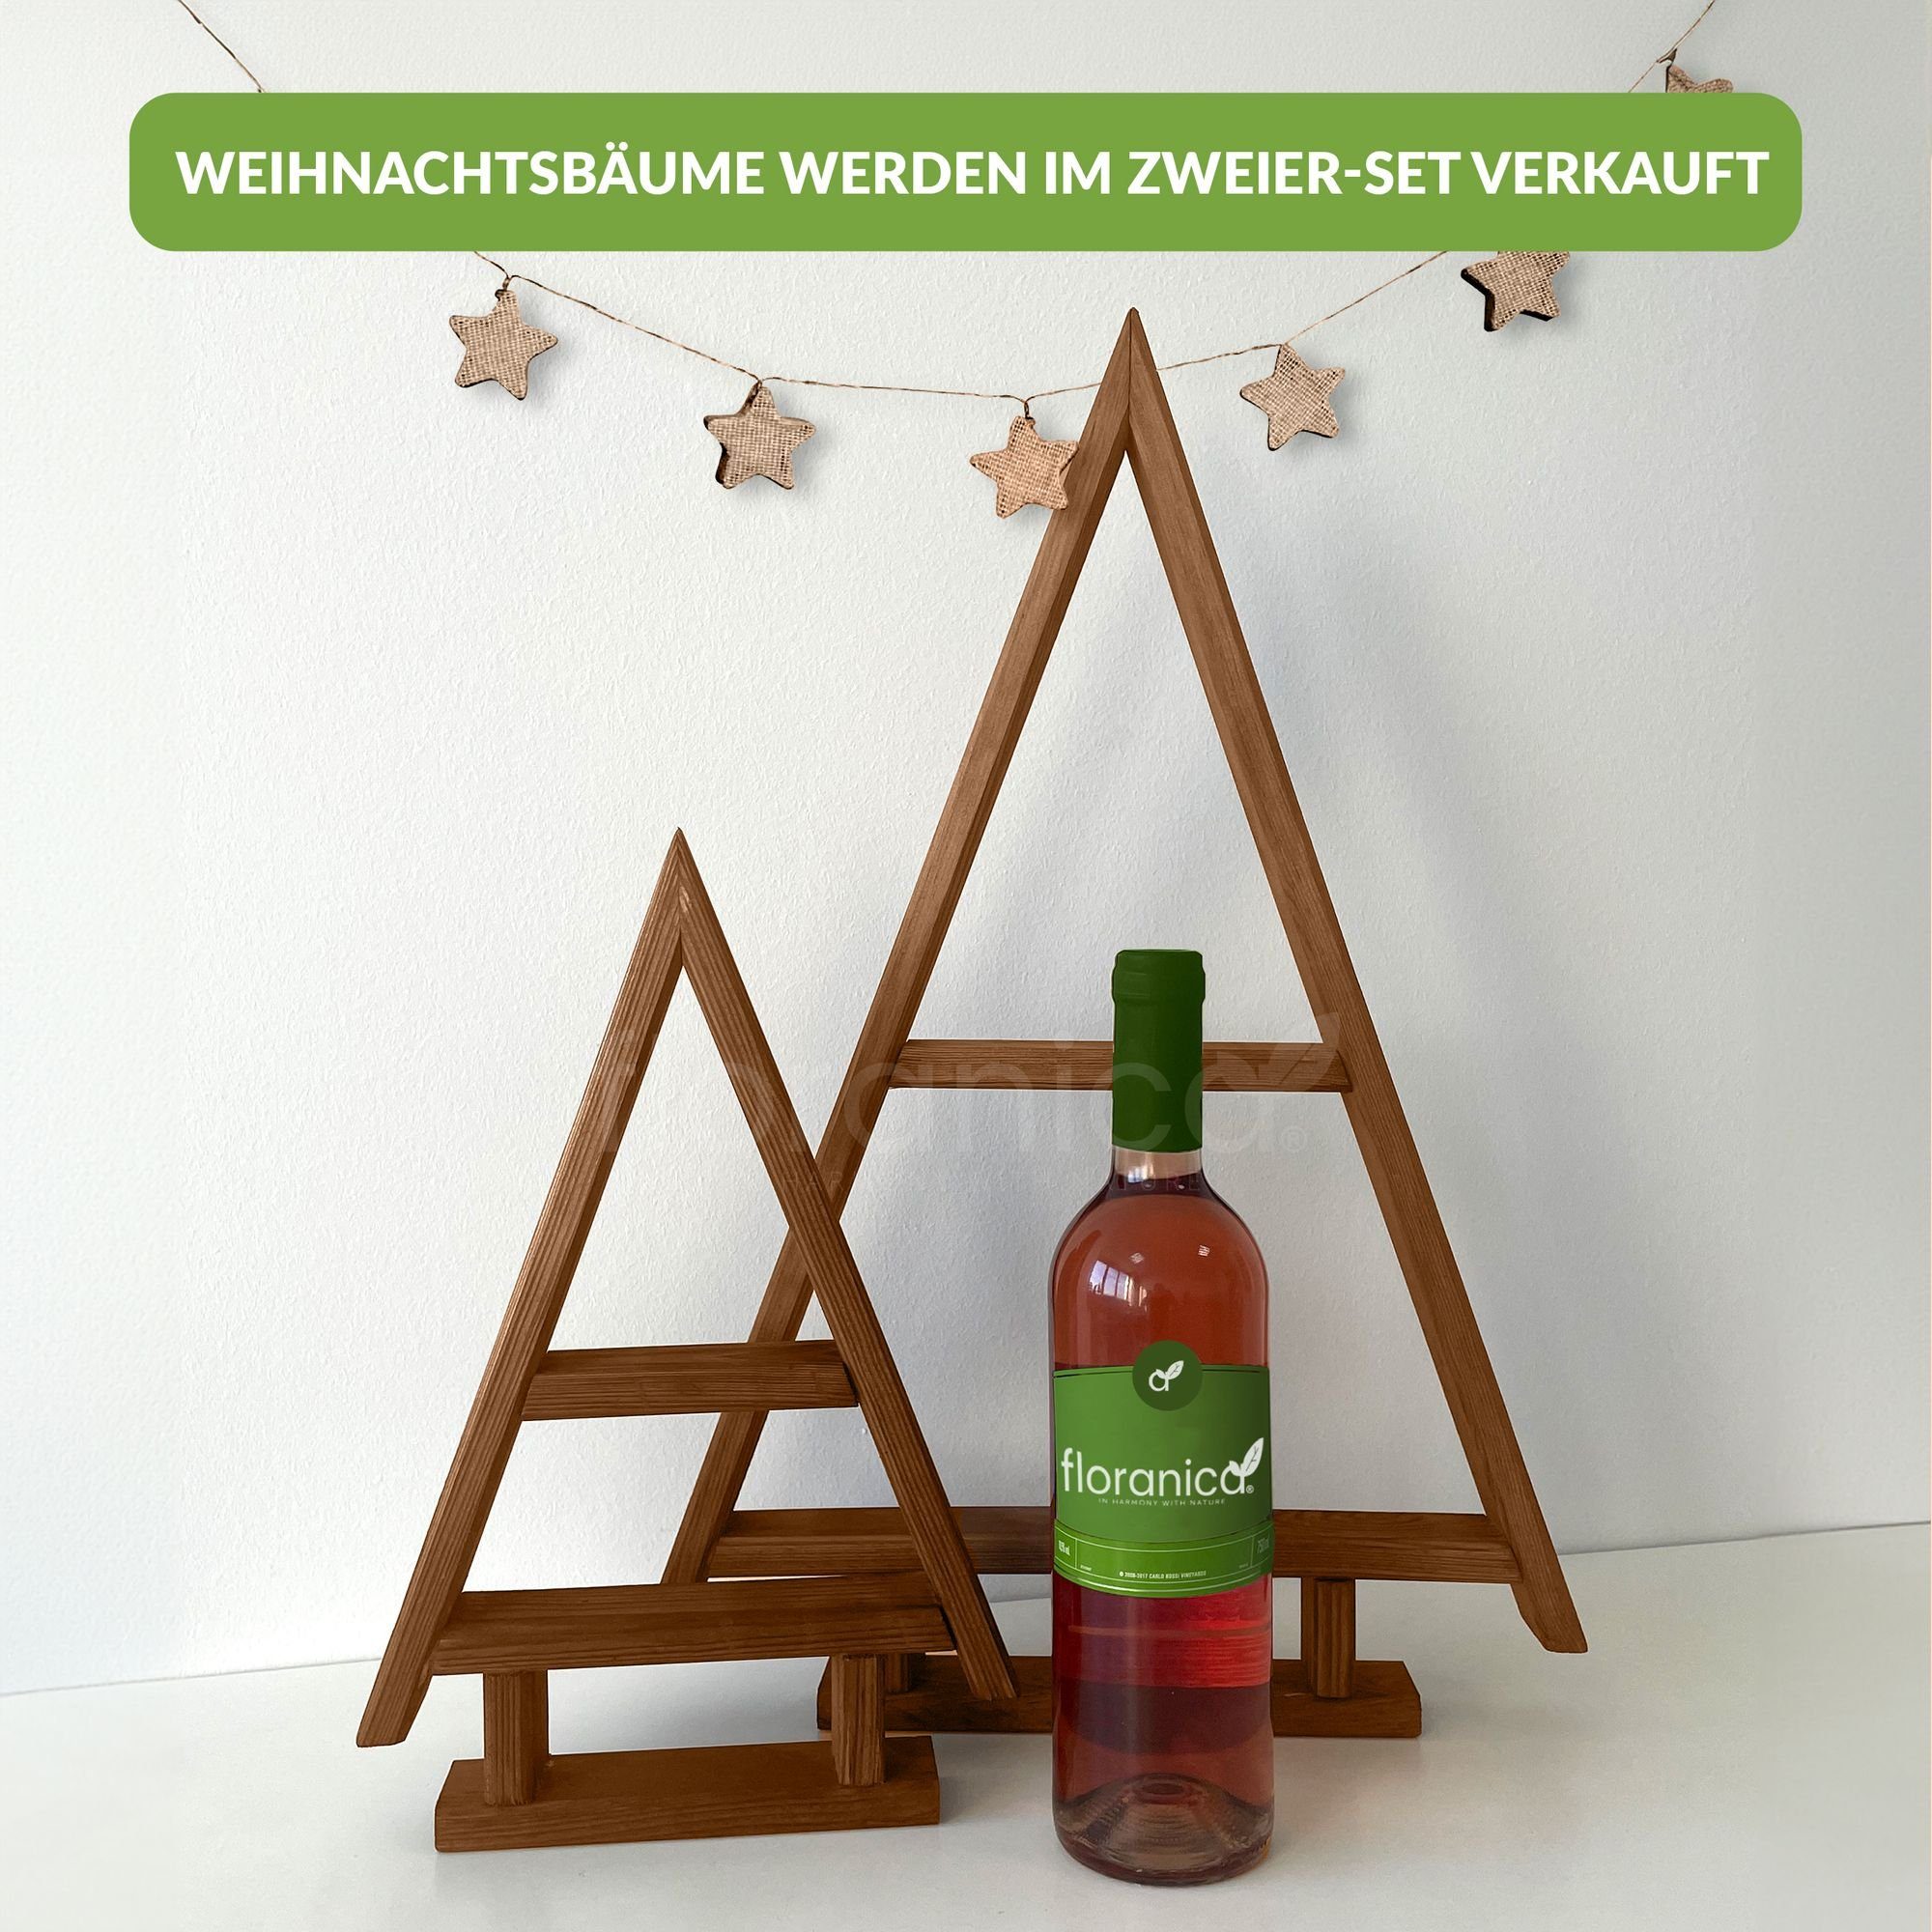 - Kiefernholz - Braun Hängedekoration Weihnachtsbaum 2er-Set (2 Weihnachtsdeko Floranica St),